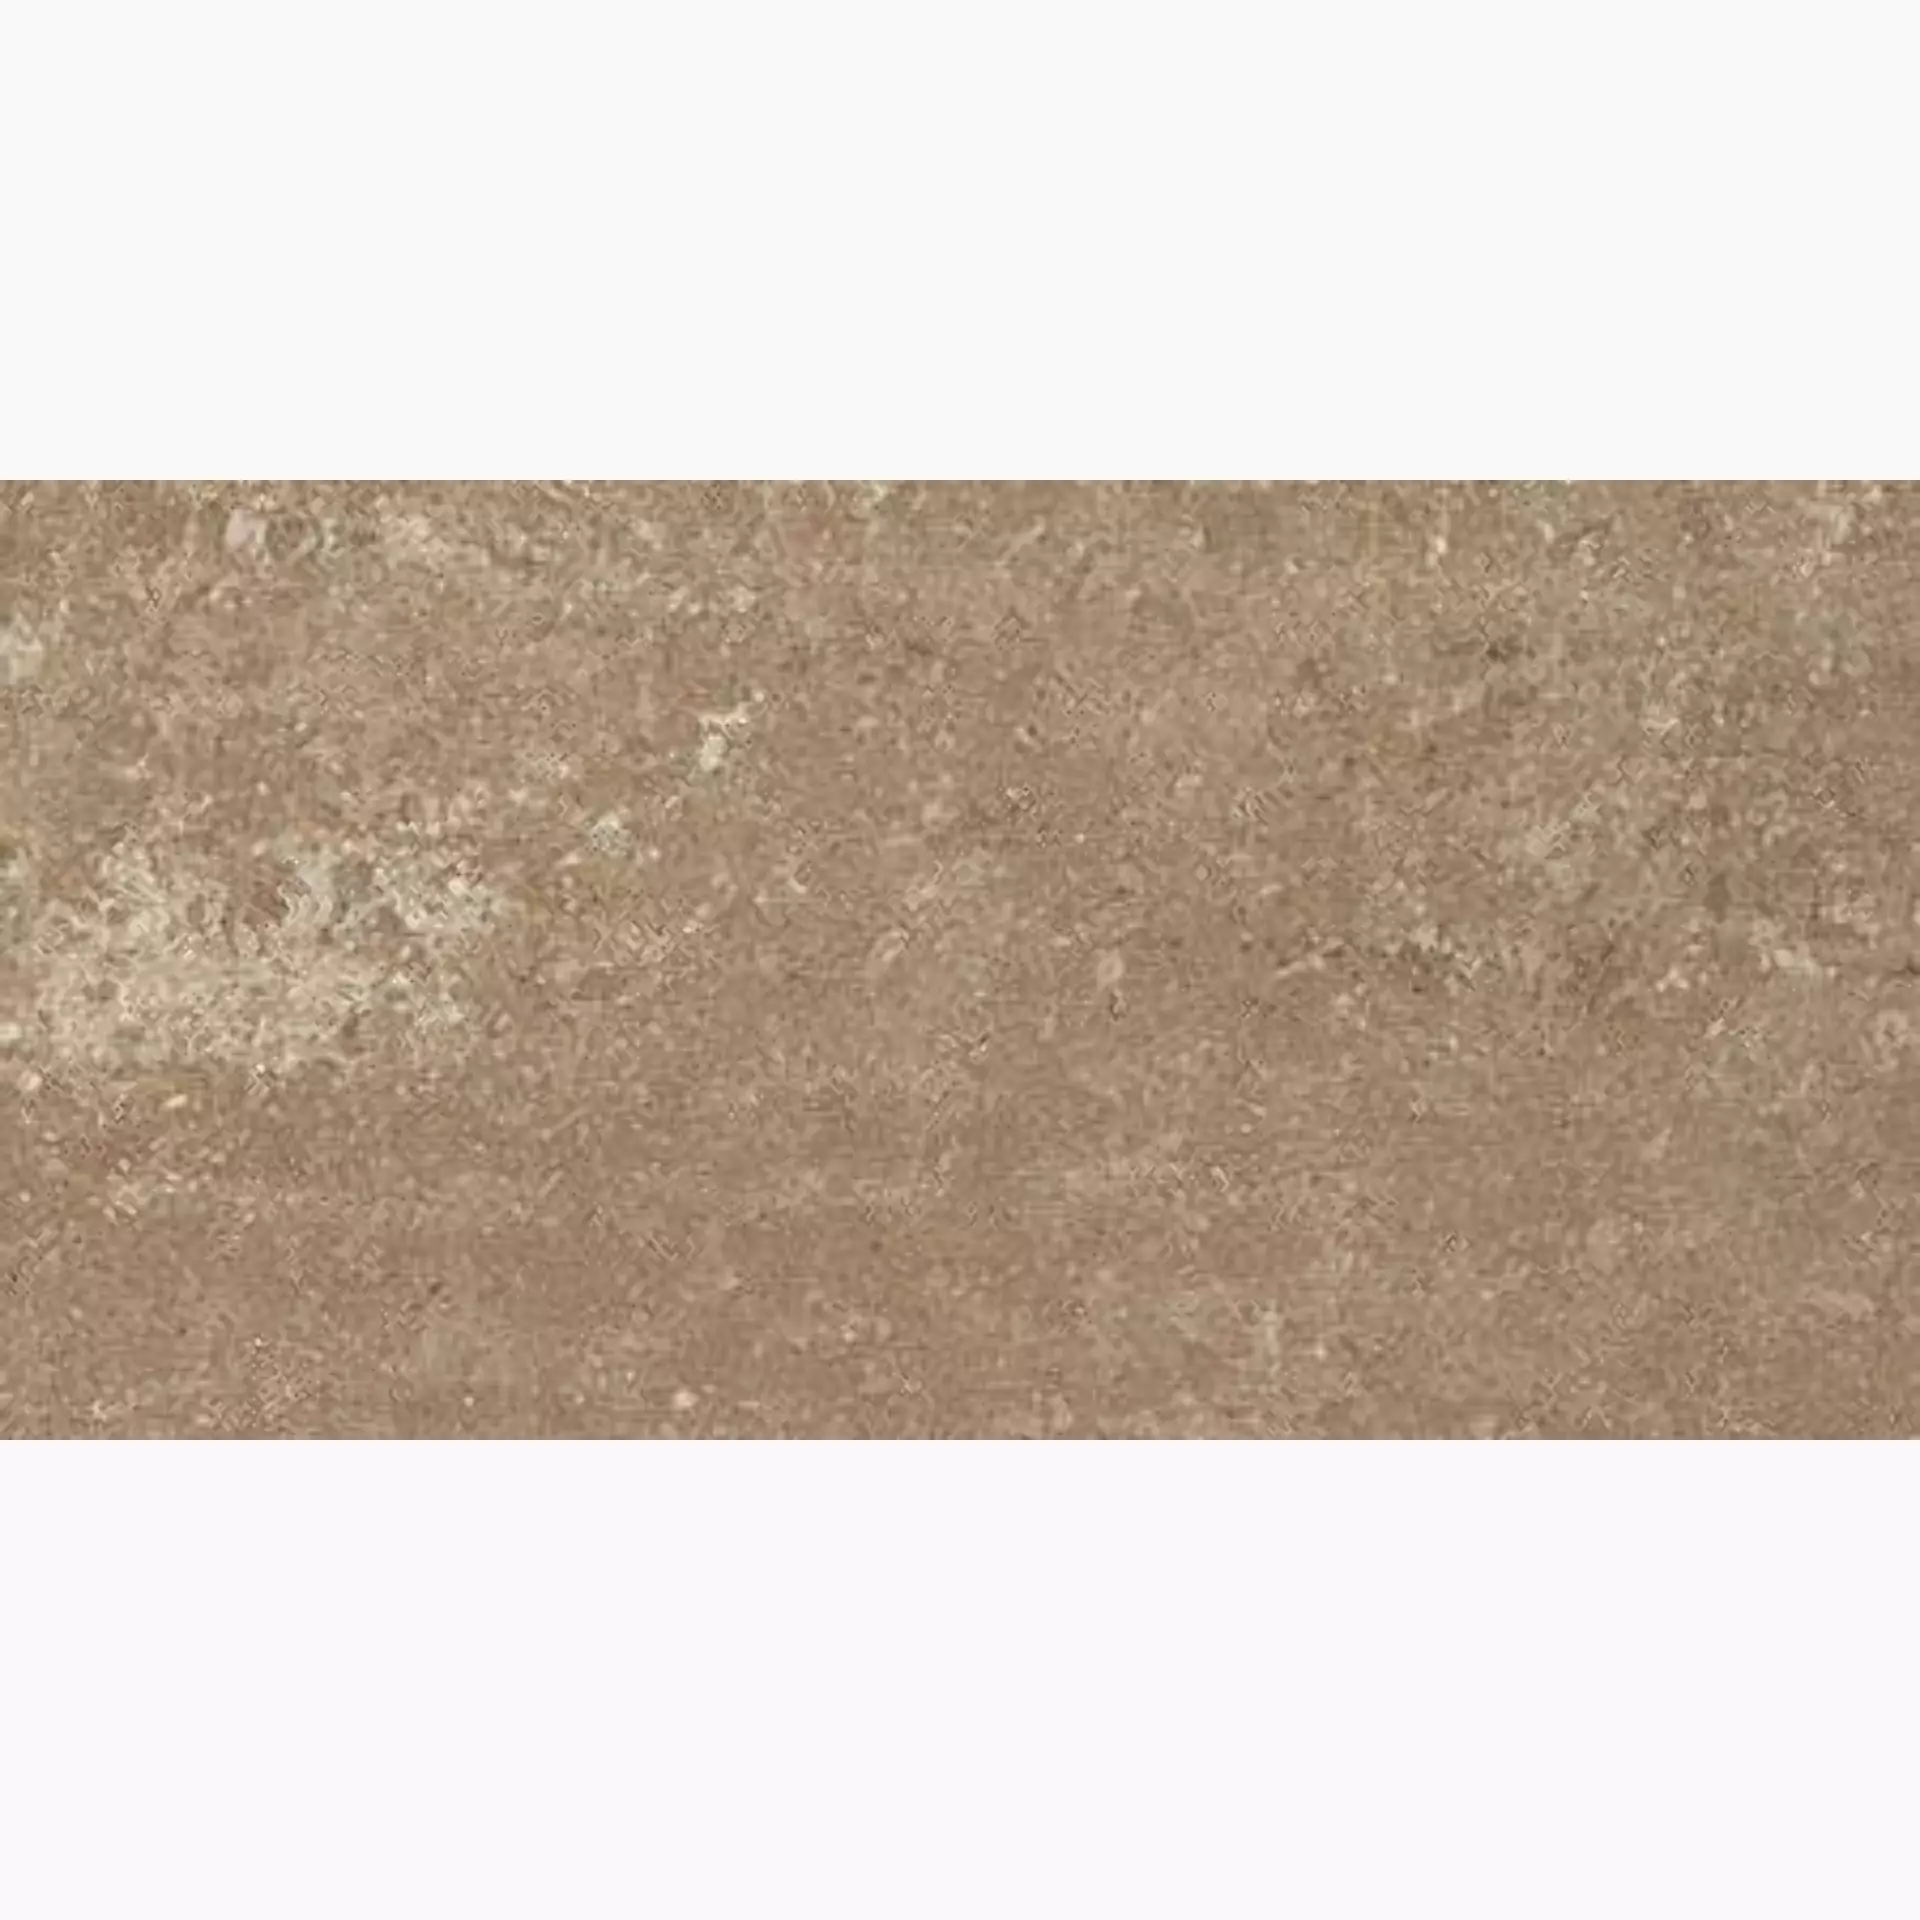 Casalgrande Marte Bronzetto Naturale – Matt – Antibacterial 9795745 30x60cm rectified 9,4mm